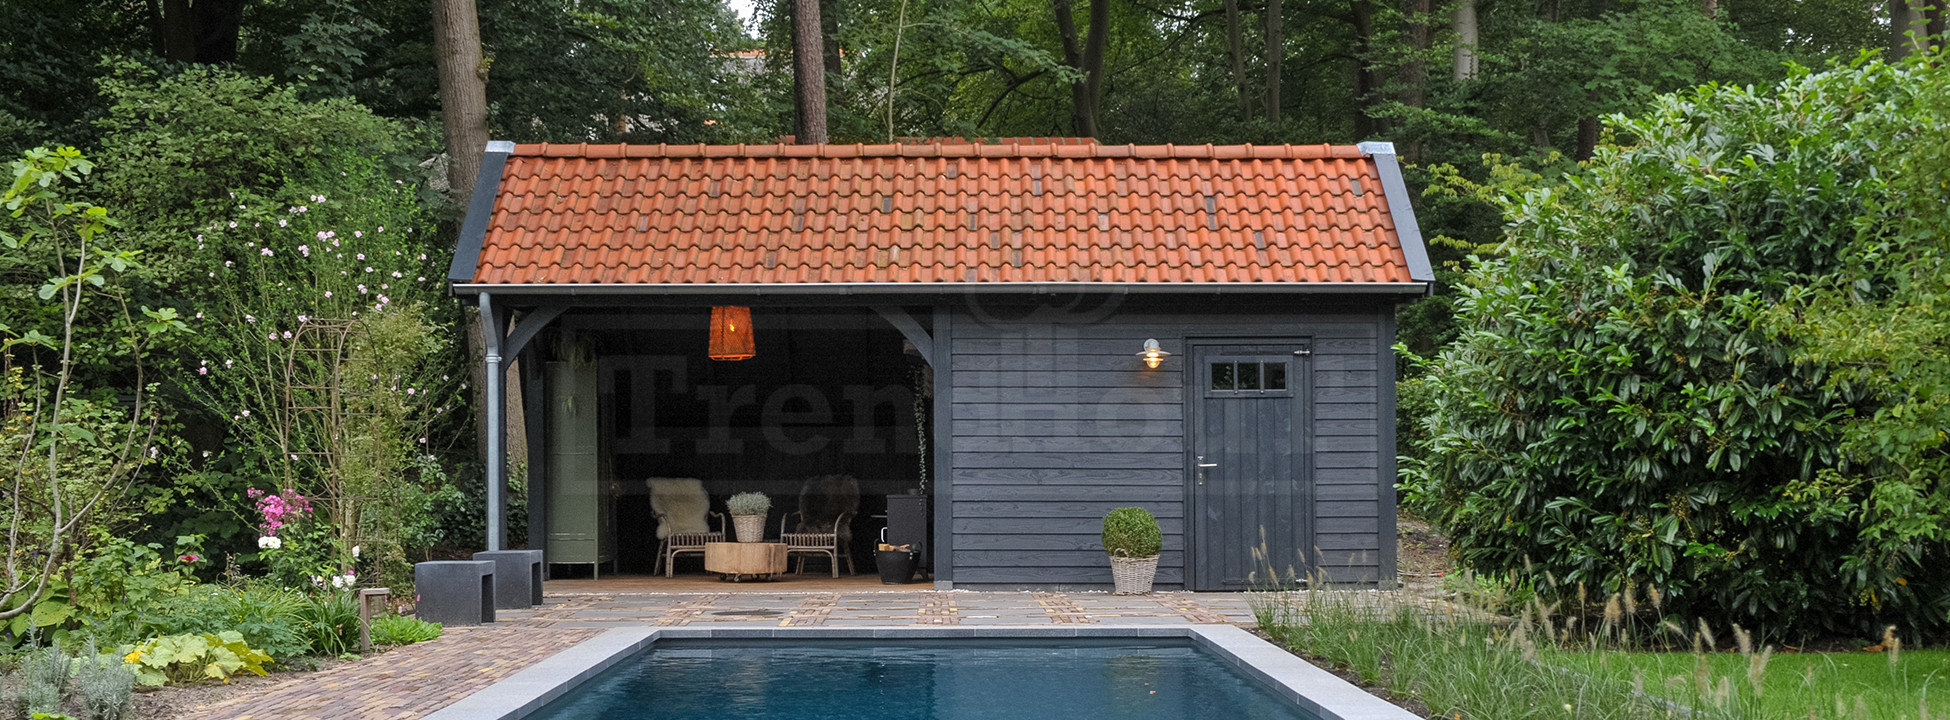 poolhouse-douglas-houten-kapschuur-de-hoeve-xl-7700-bij-zwembad-schuur-met-overkapping-trendhout